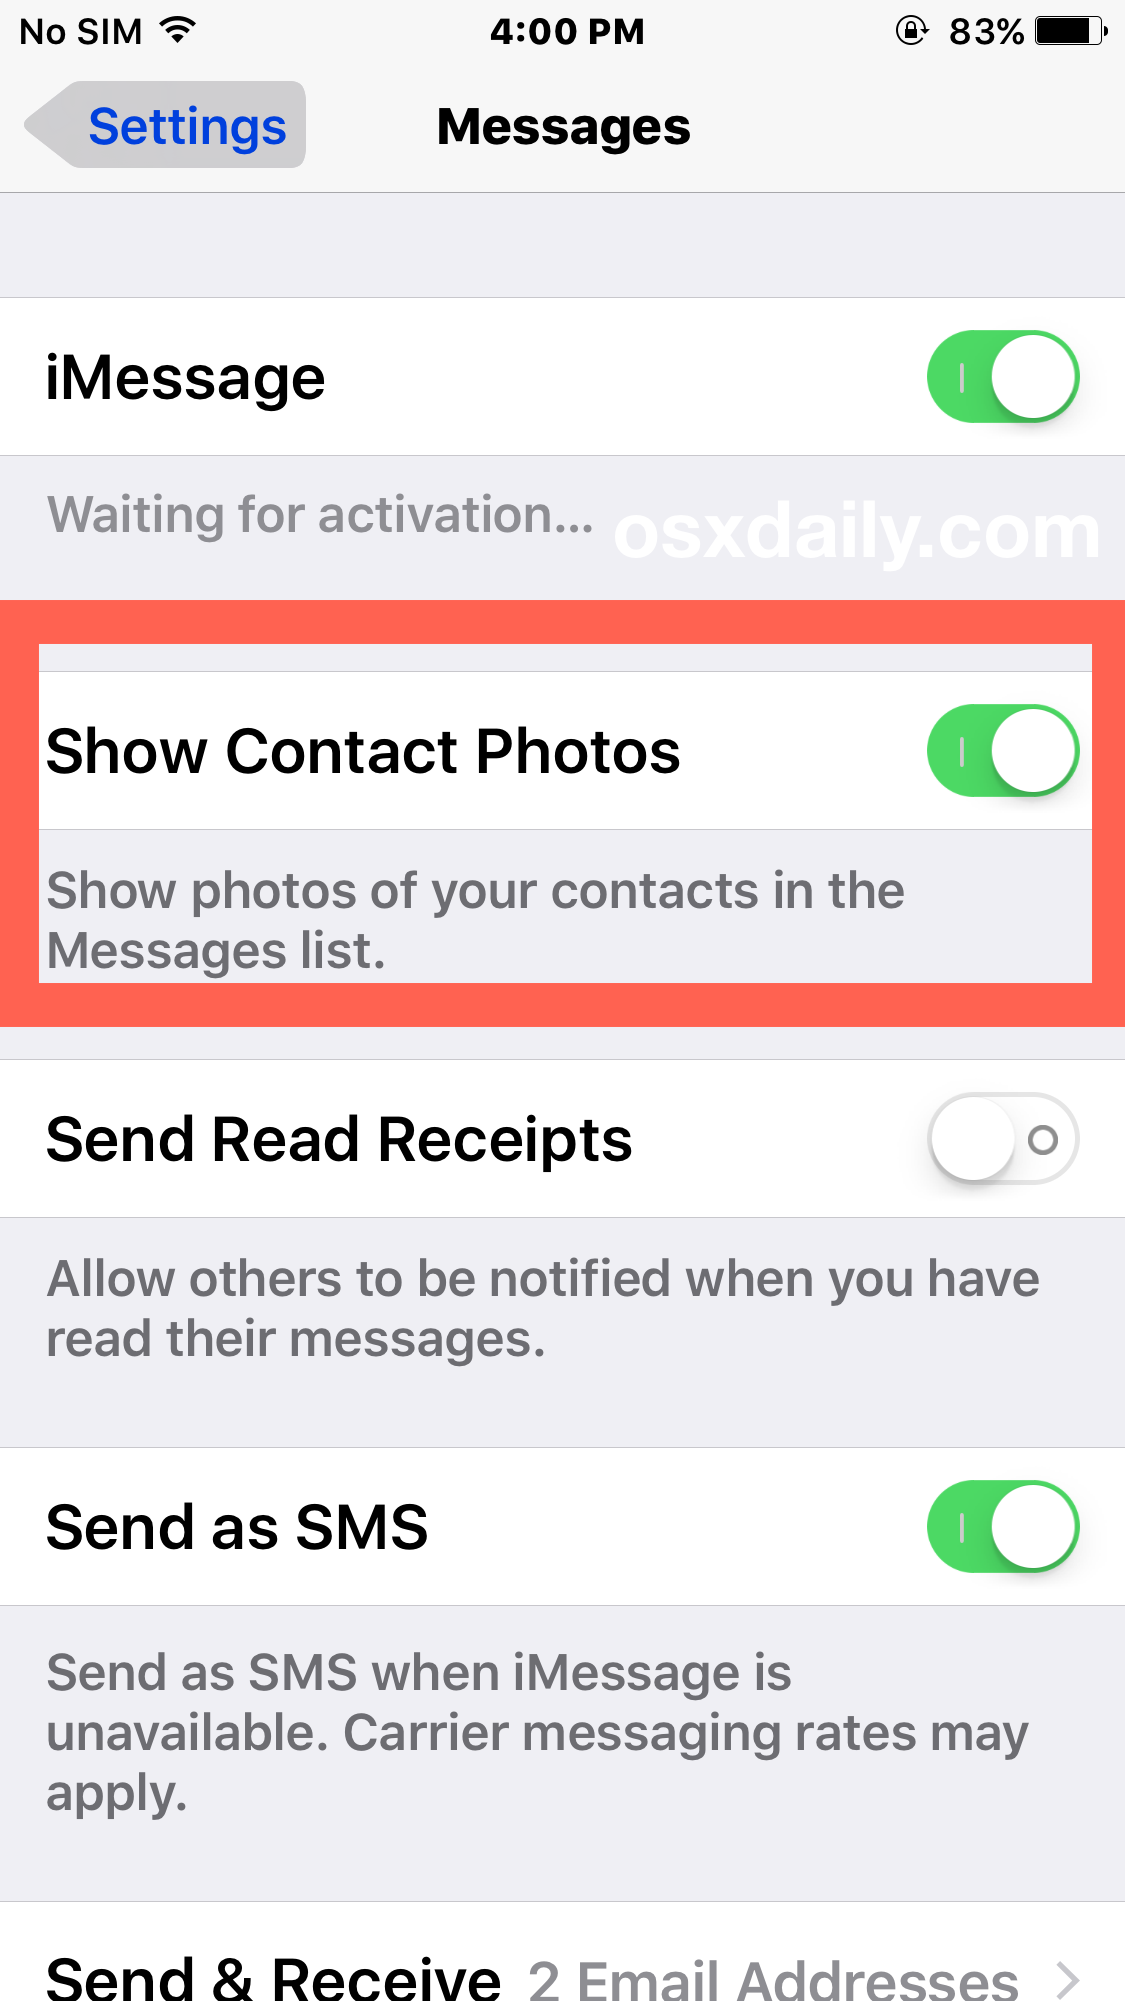 隐藏和显示联系人照片在 iOS 的消息应用程序中” />   </p>
<li>返回消息应用，消息列表现在没有任何联系人照片</li>
</ol>
<p>  <img decoding=